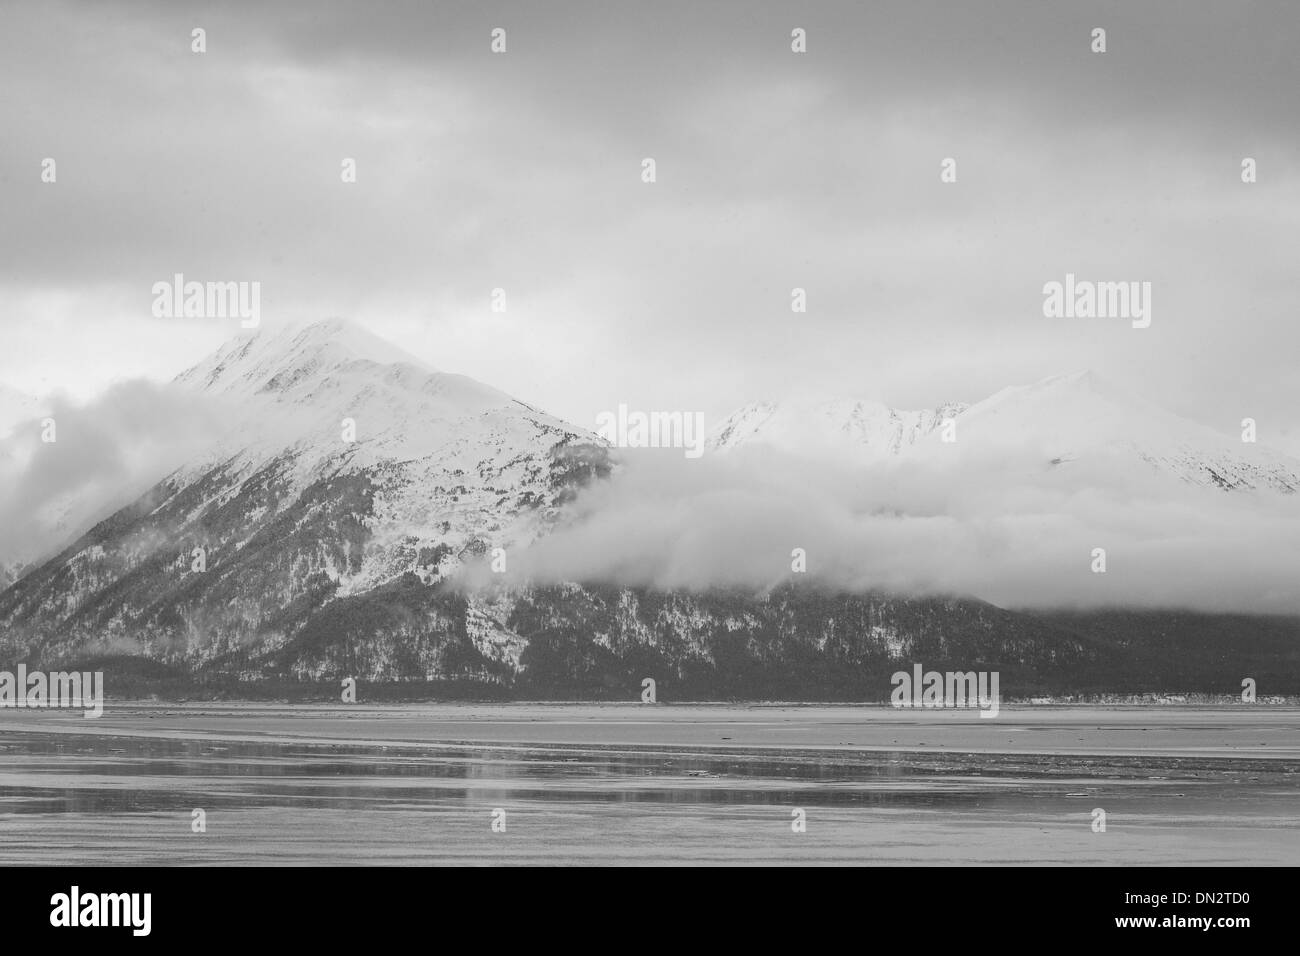 Scène d'hiver sur l'Alaska Turnagain Arm en noir et blanc Banque D'Images